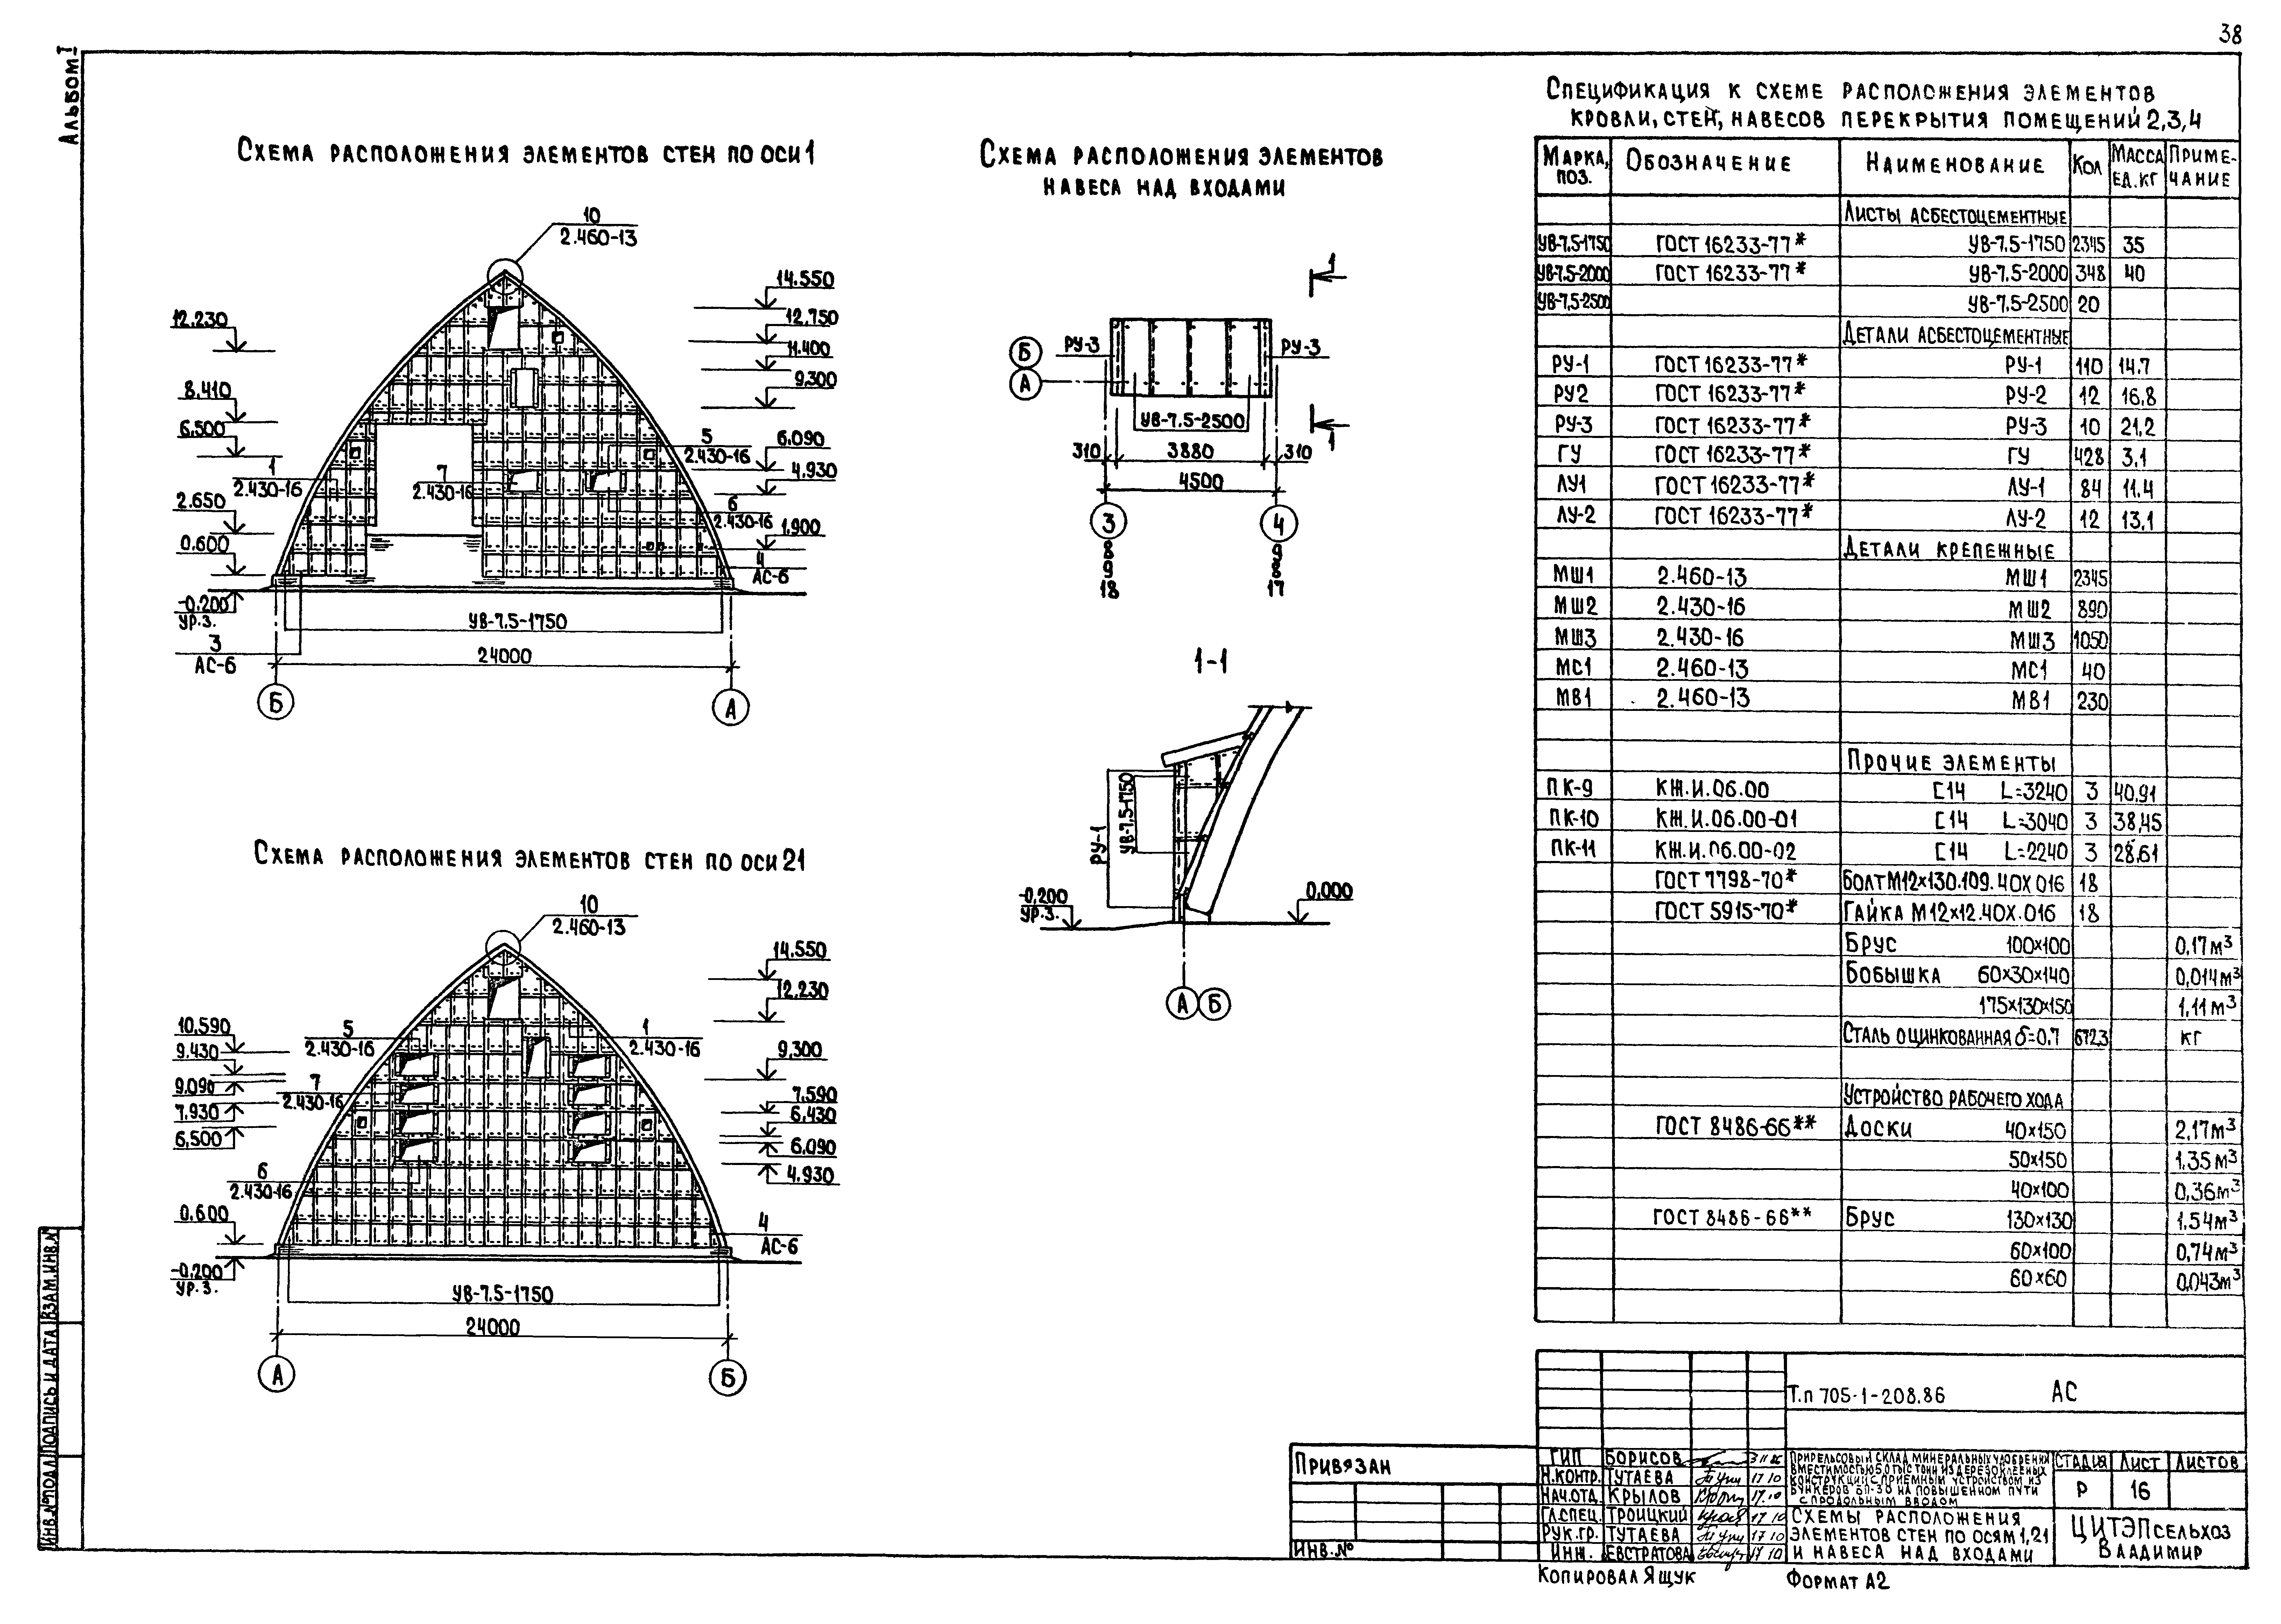 Типовой проект 705-1-208.86